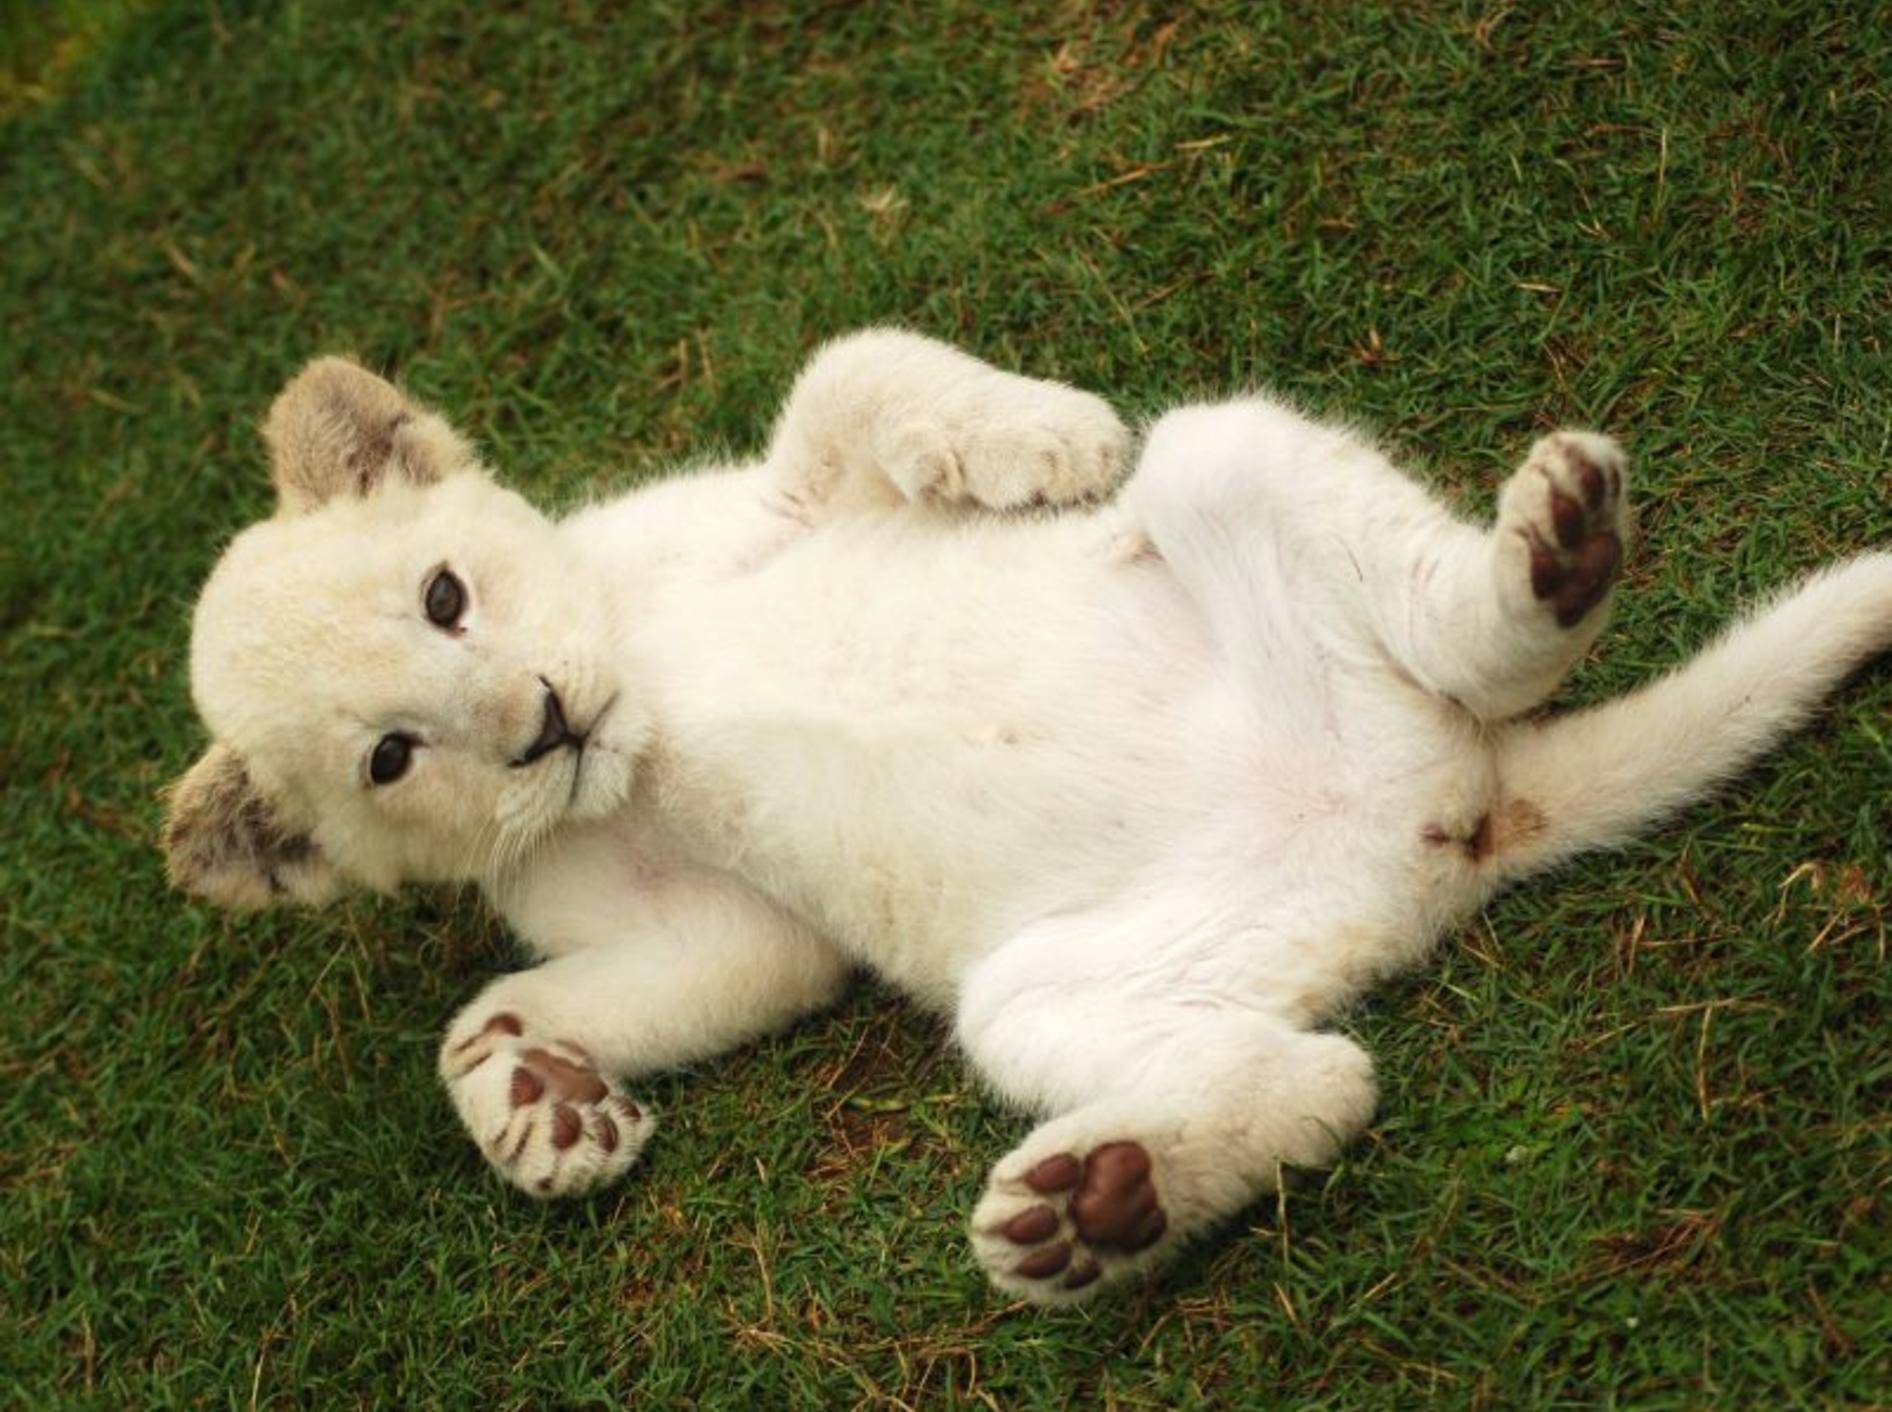 "Hallo Fans!", ein weißes Löwenbaby genießt sein Raubkatzenleben — Bild: Shutterstock / Anke van Wyk